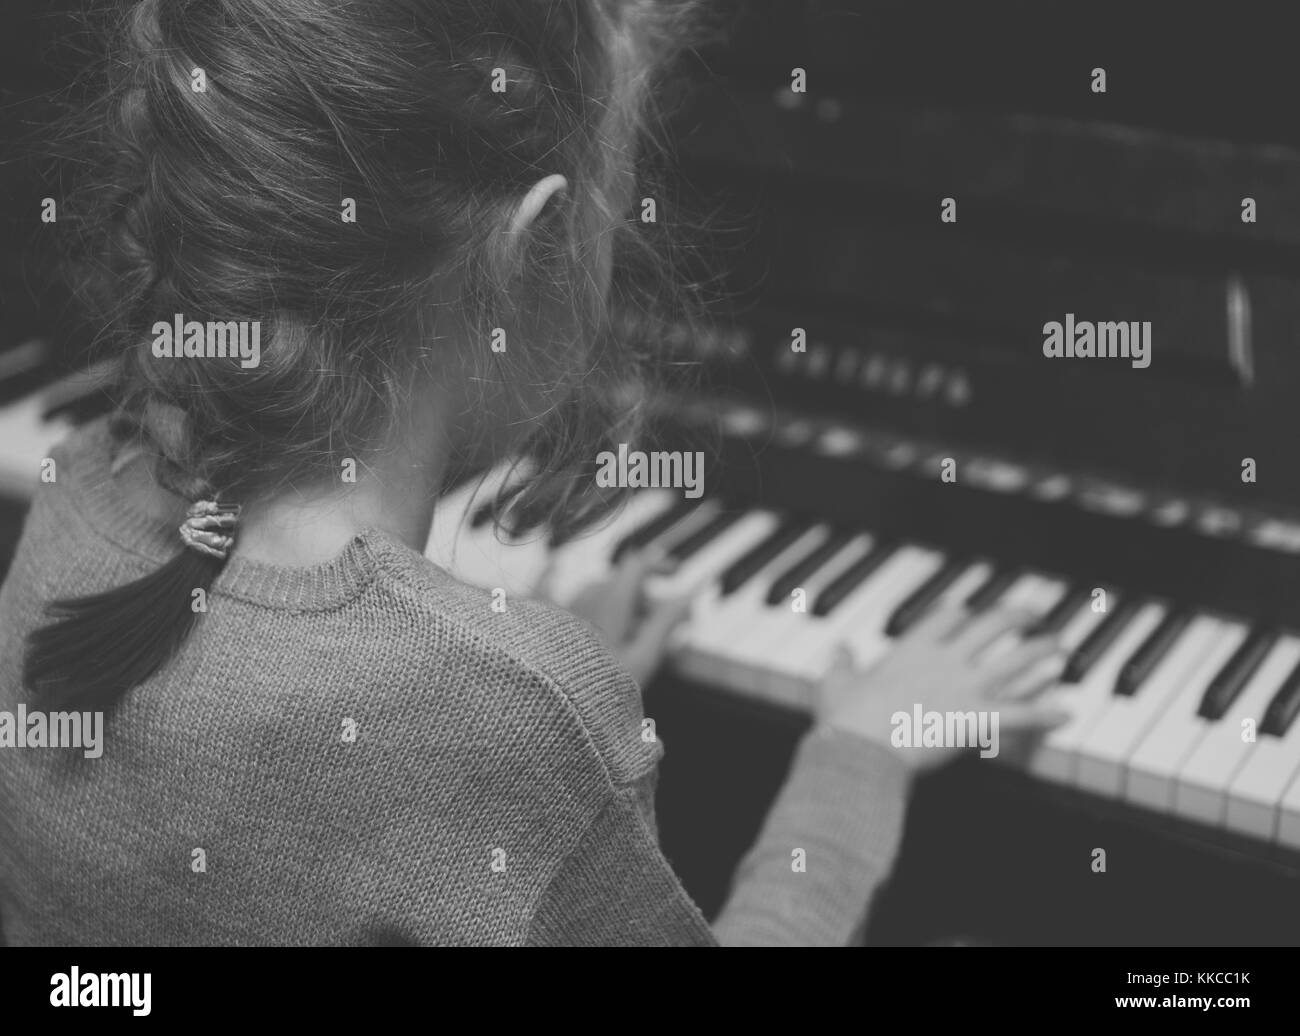 Petite fille apprenant à jouer du piano. Noir et blanc. Banque D'Images